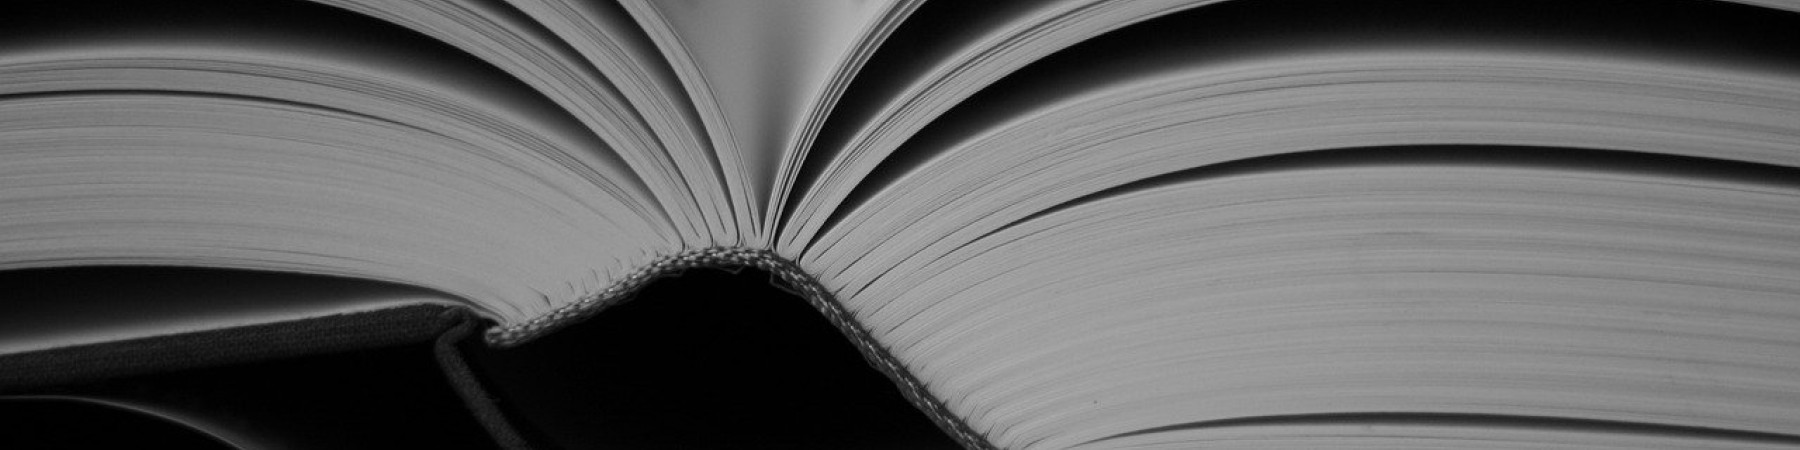 Libro abierto (foto. Pixabay)